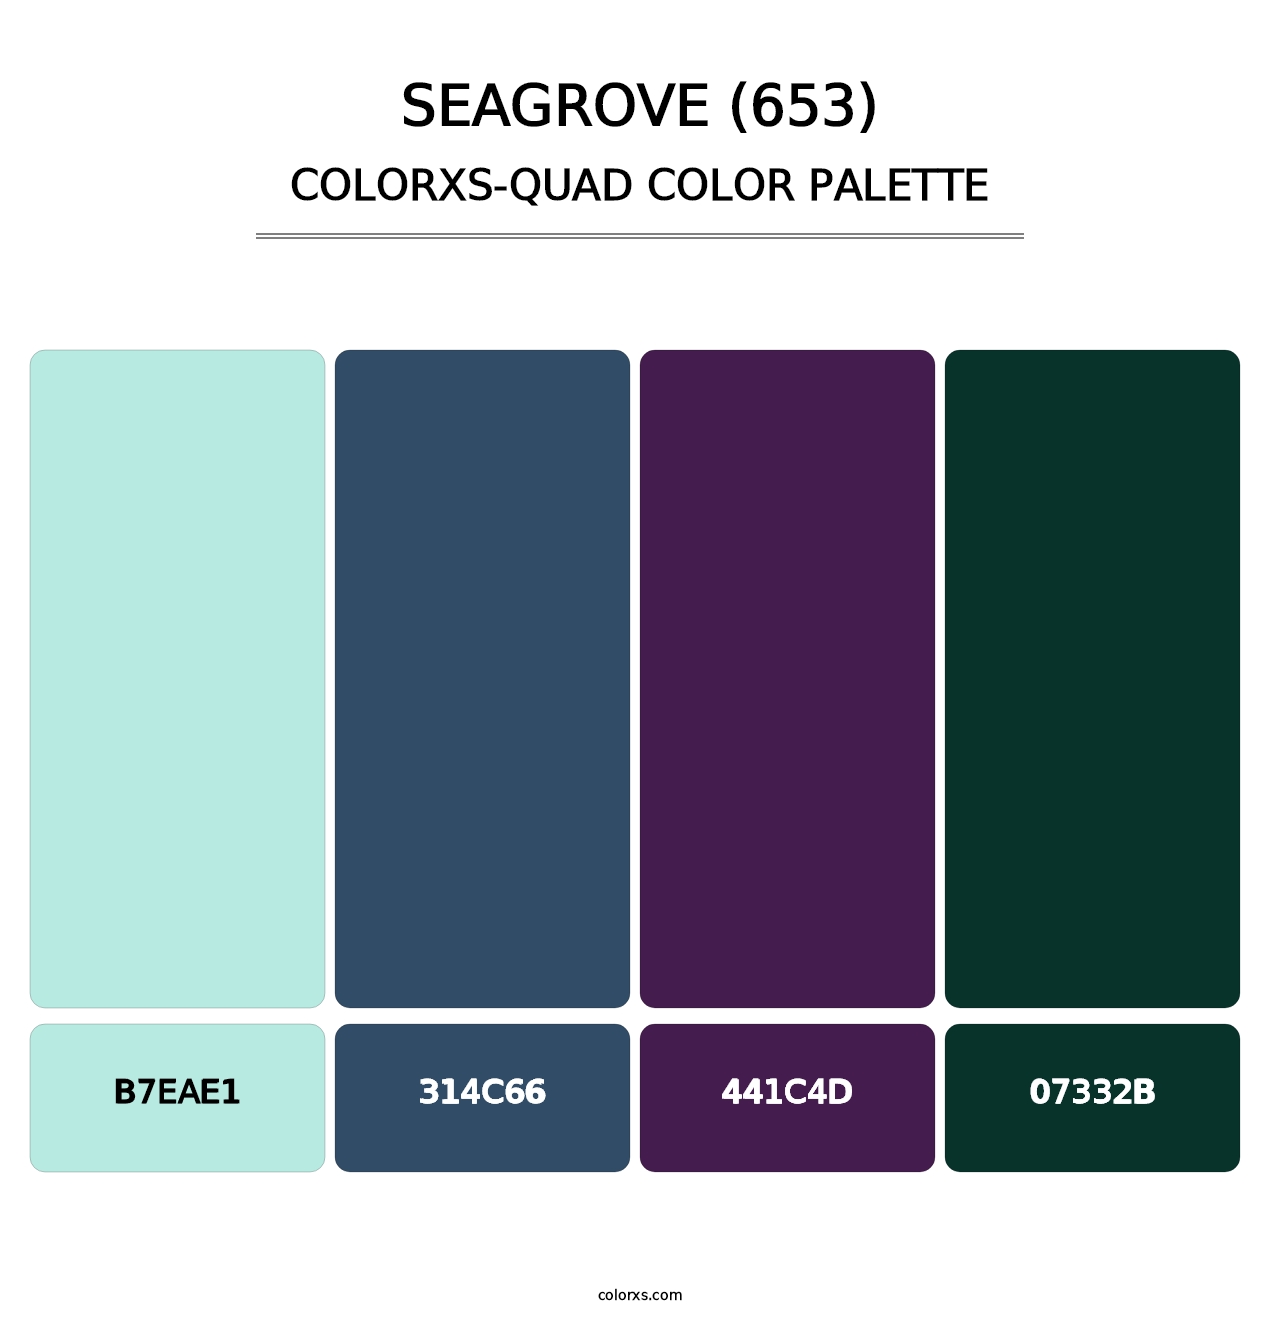 Seagrove (653) - Colorxs Quad Palette